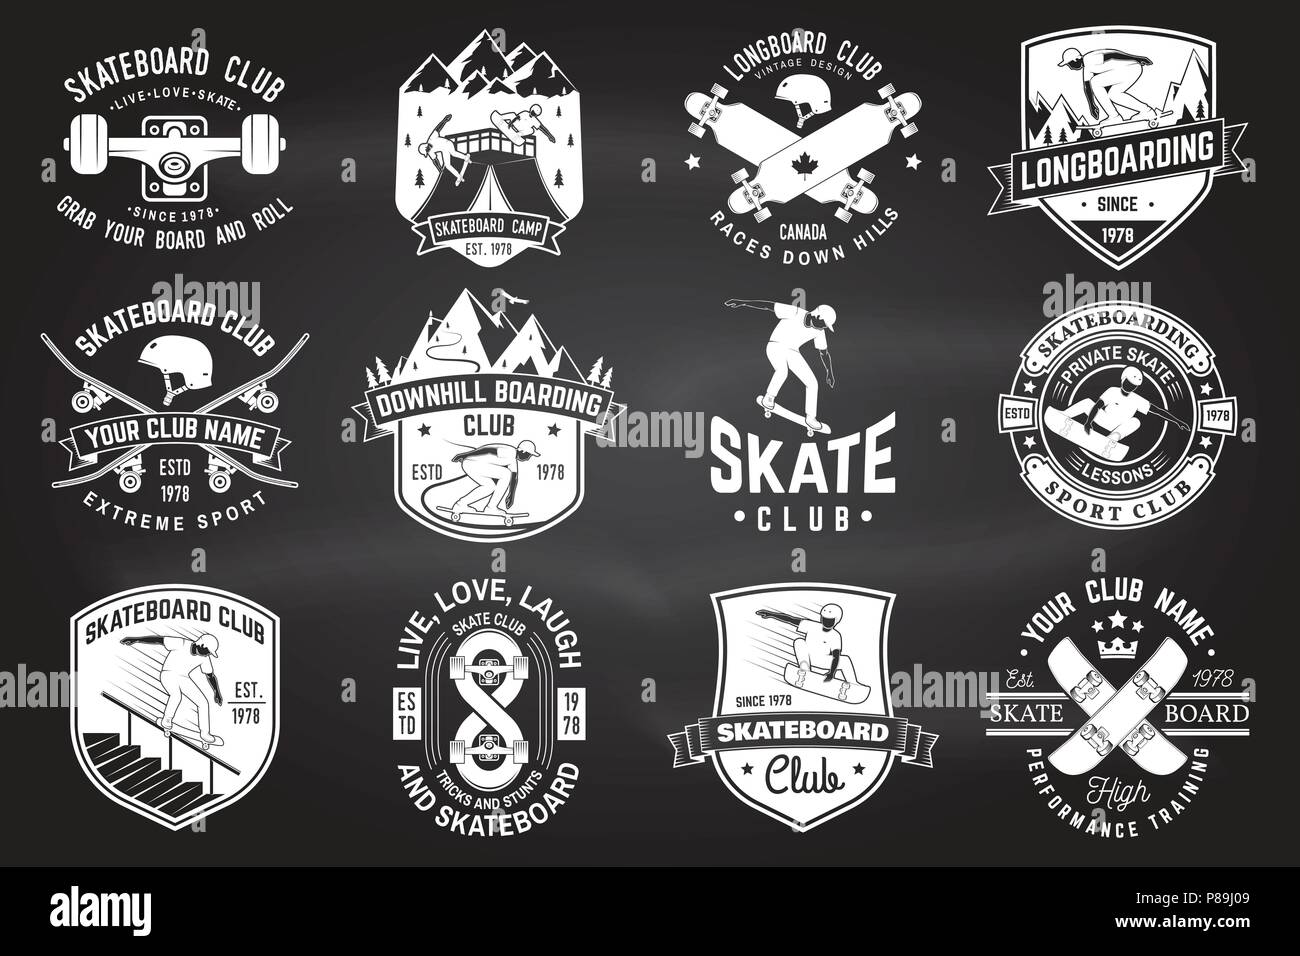 Juego de Skate y longboard club signos en la pizarra. Vector. Para skate  club emblemas, parche, t-shirt design. Diseño de tipografía Vintage con  patinetas, patines y casco de camiones. Deporte extremo Imagen